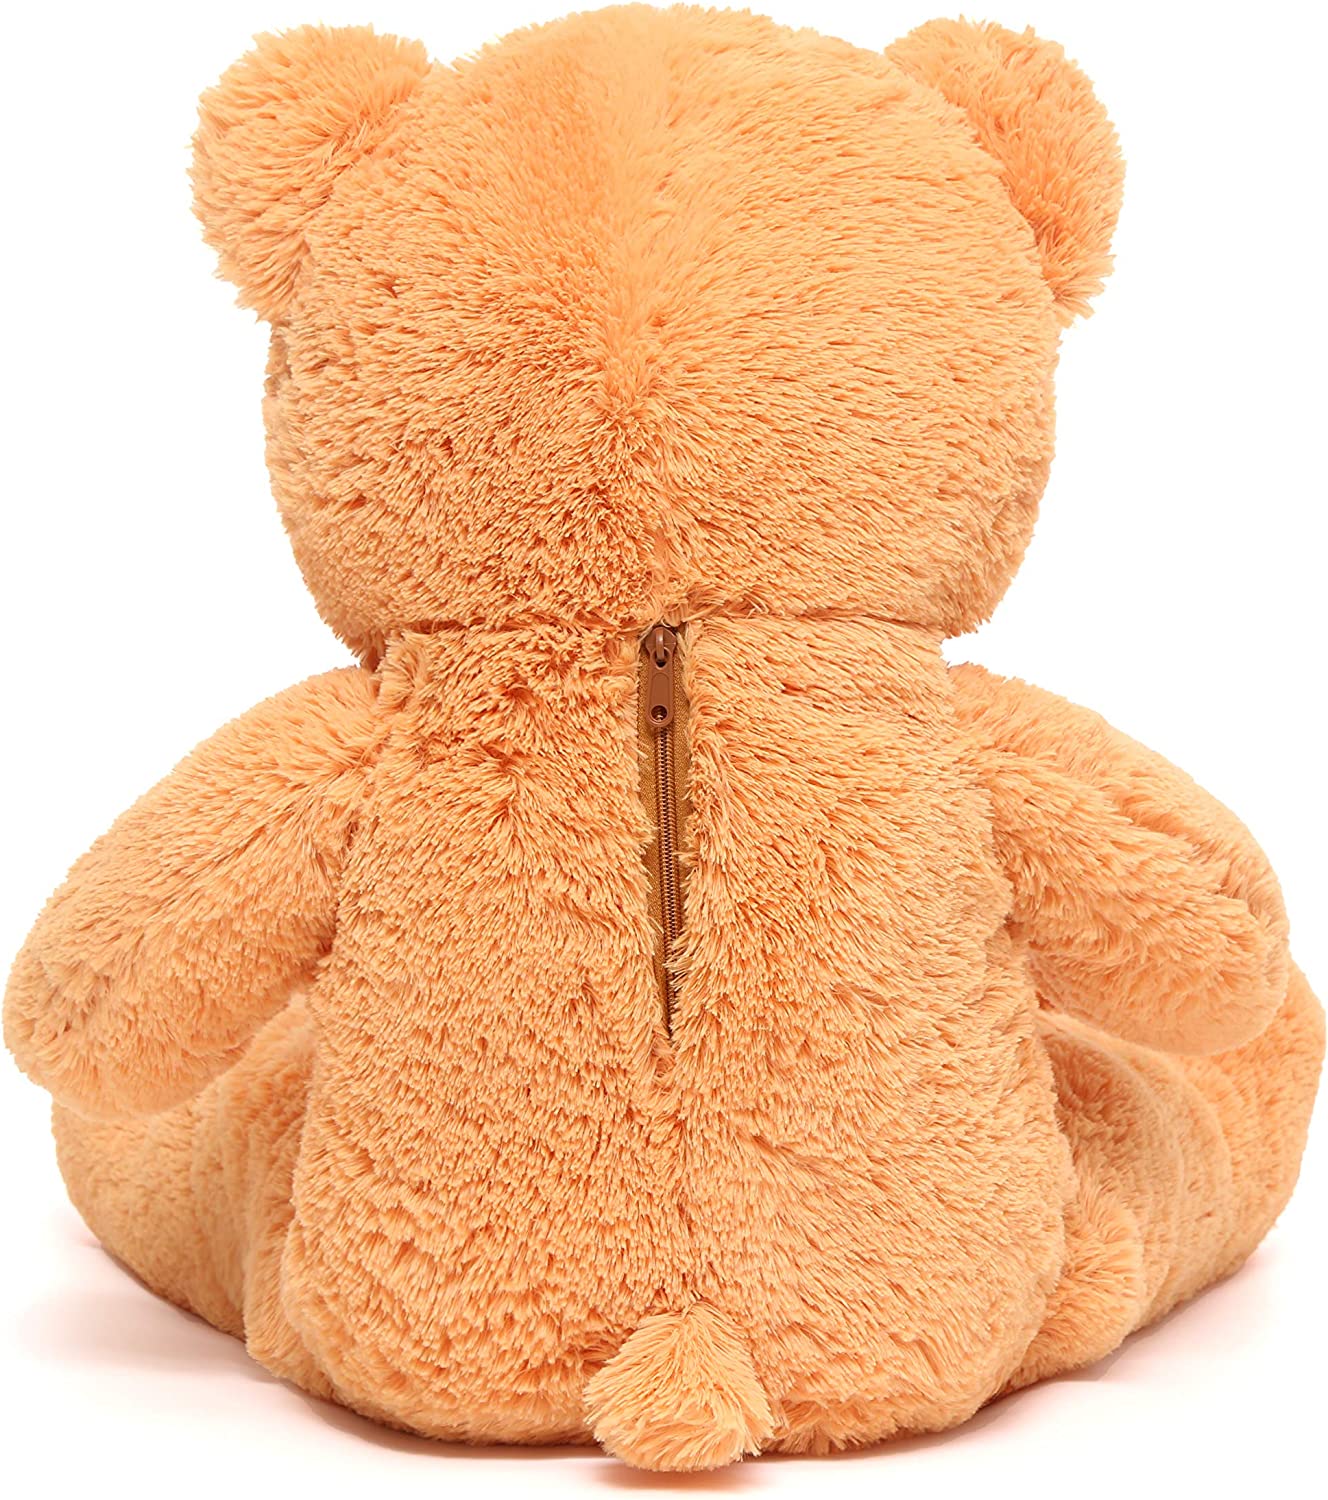 Riesiges Teddybär-Plüschtier, Orange, 47 Zoll